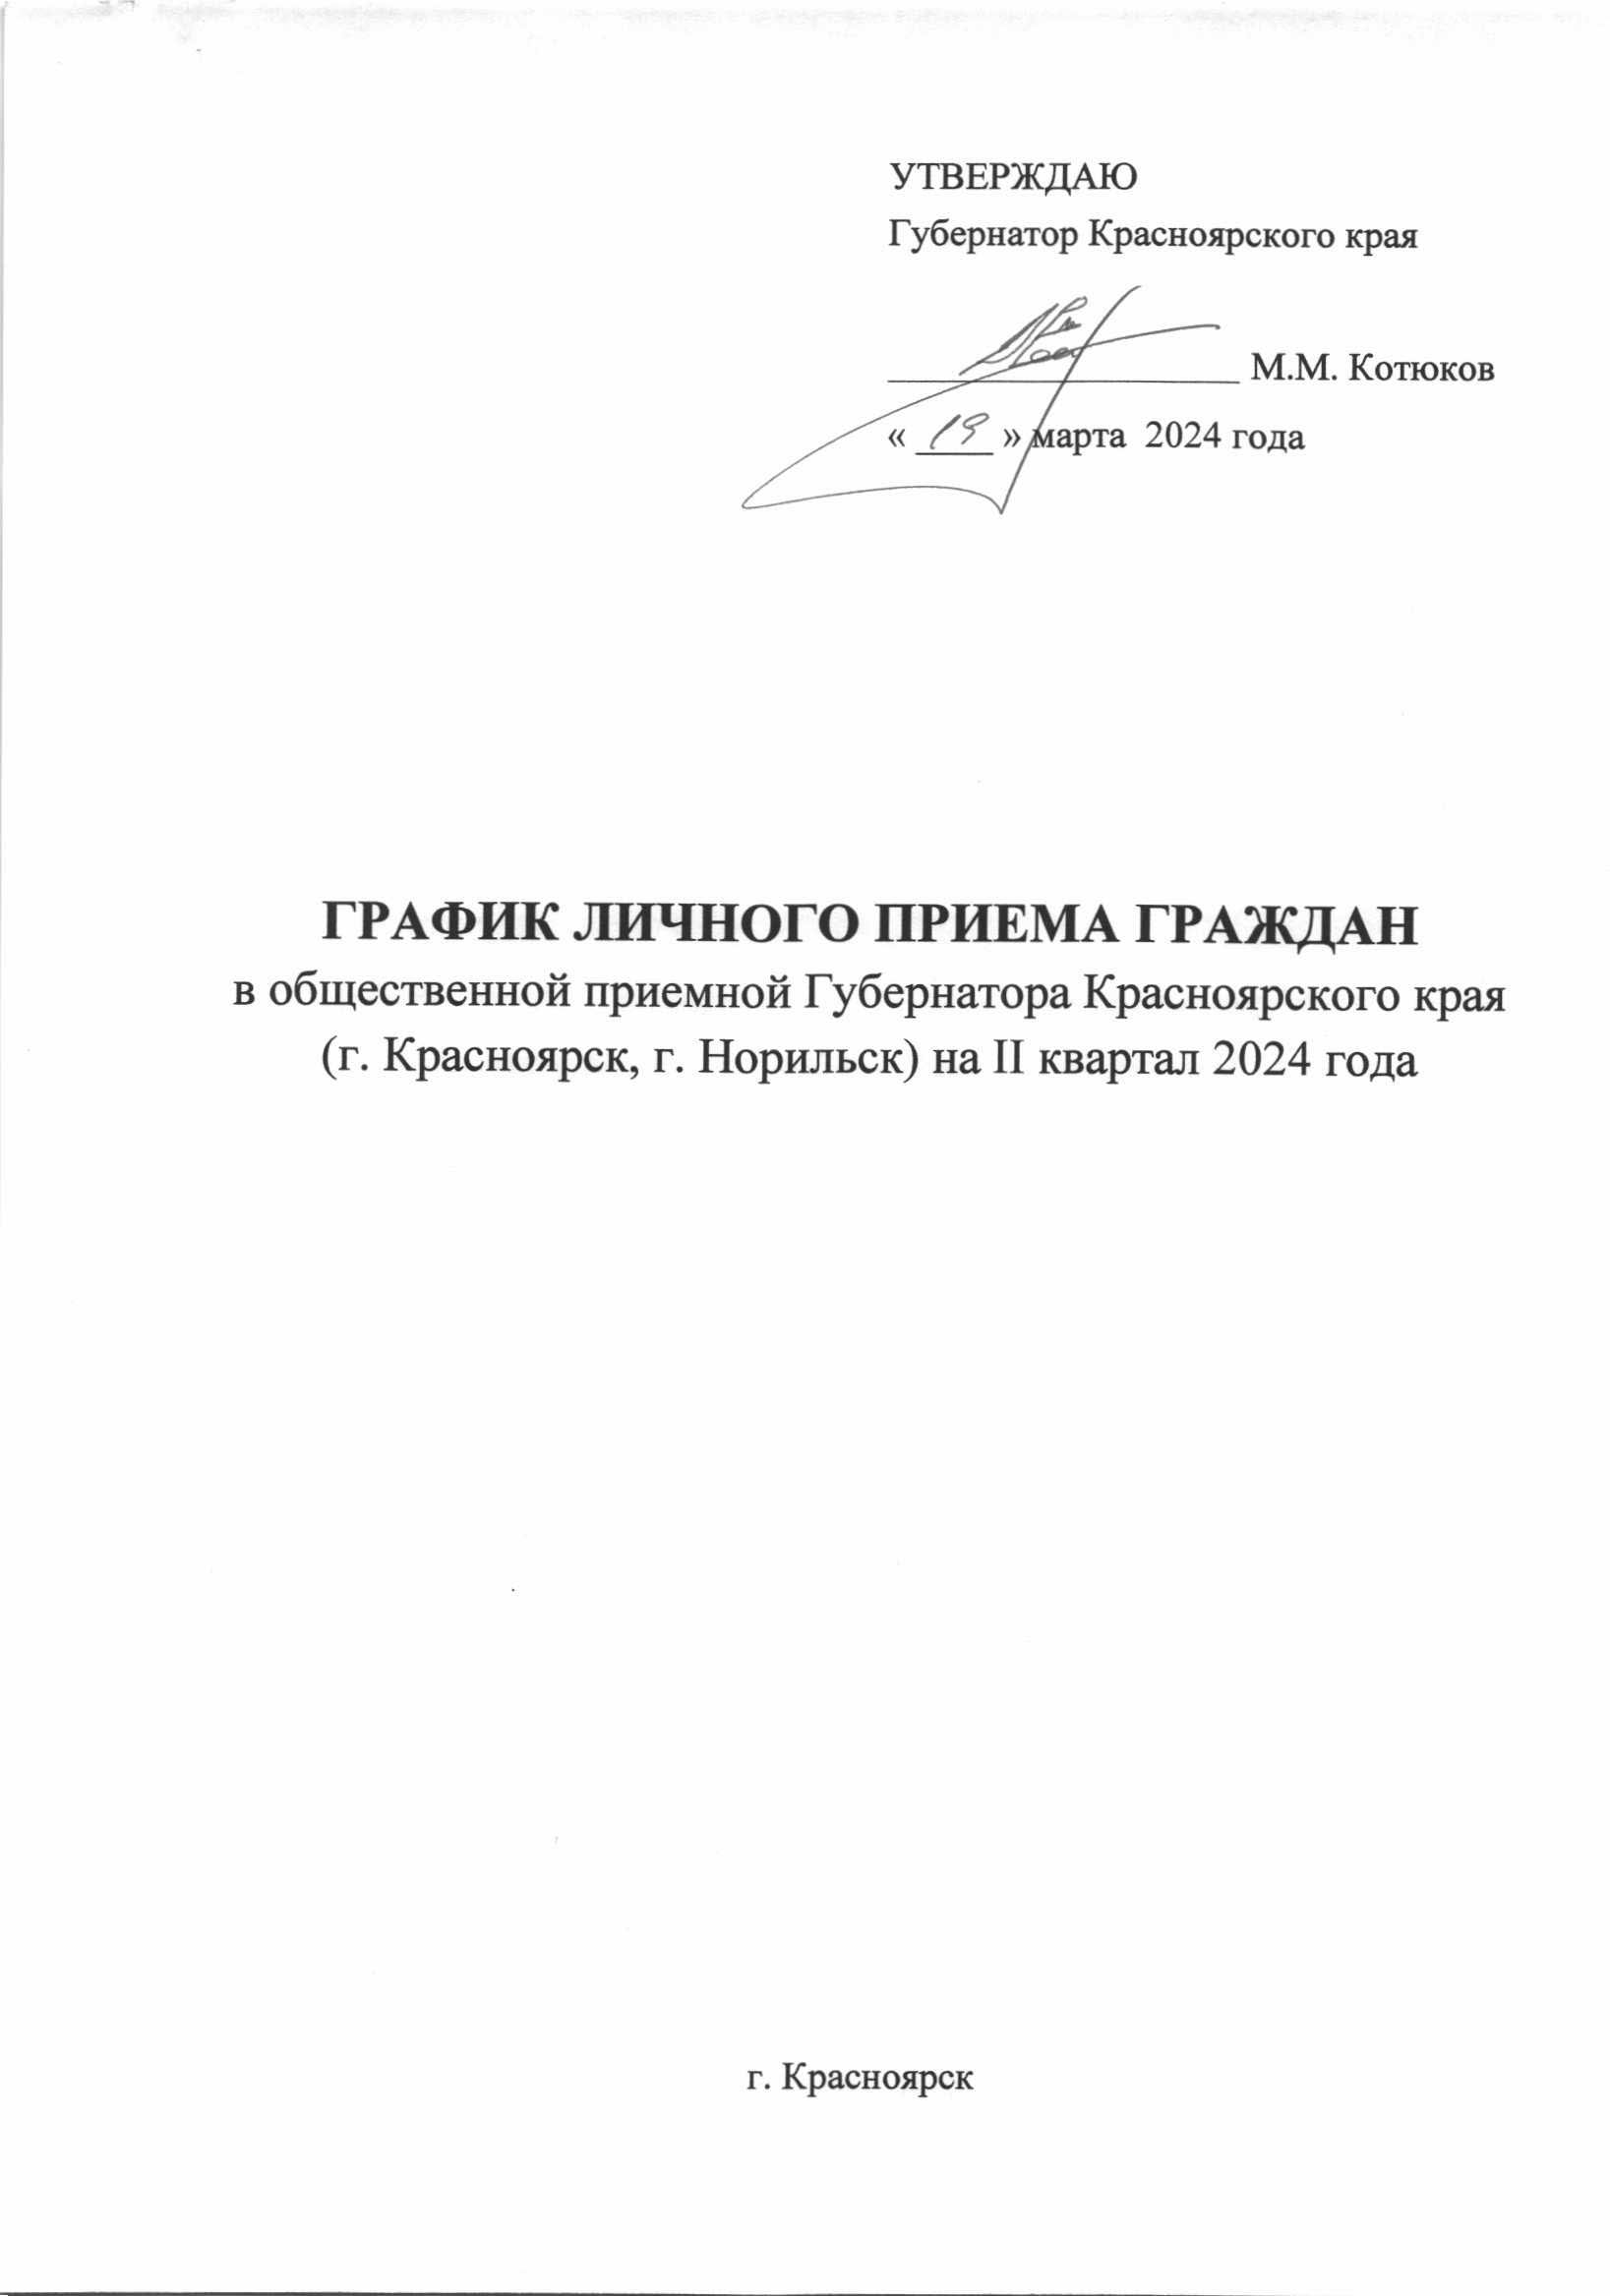 График личного приема граждан в общественной приемной Губернатора Красноярского края (г. Красноярск) на II квартал 2024 года.